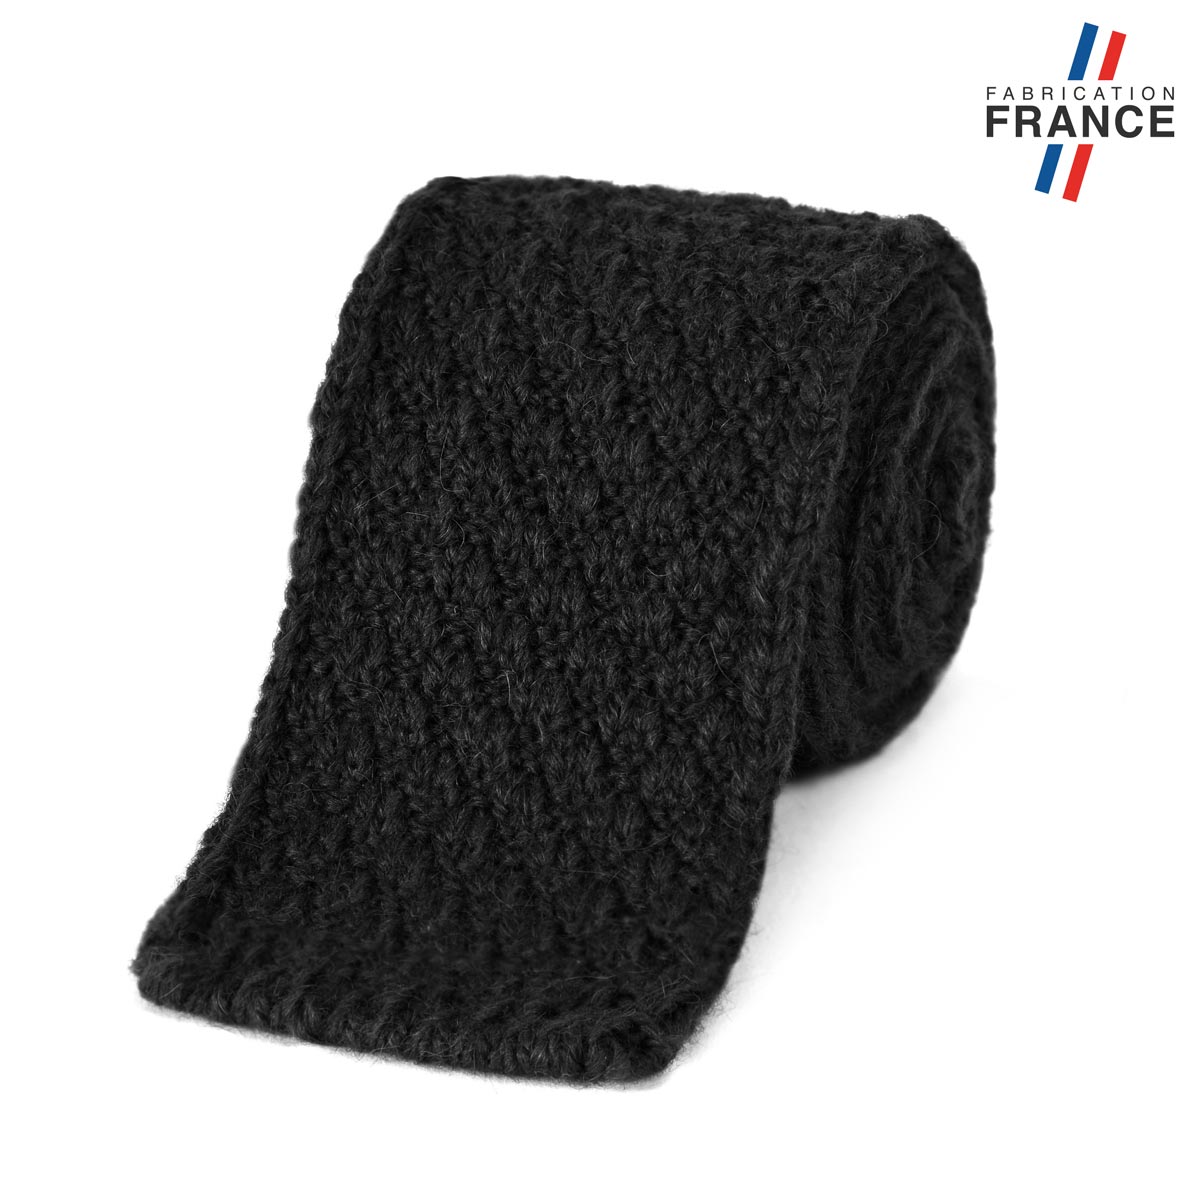 CV-00466_F12-1FR_Cravate-tricot-noire-fabrication-francaise